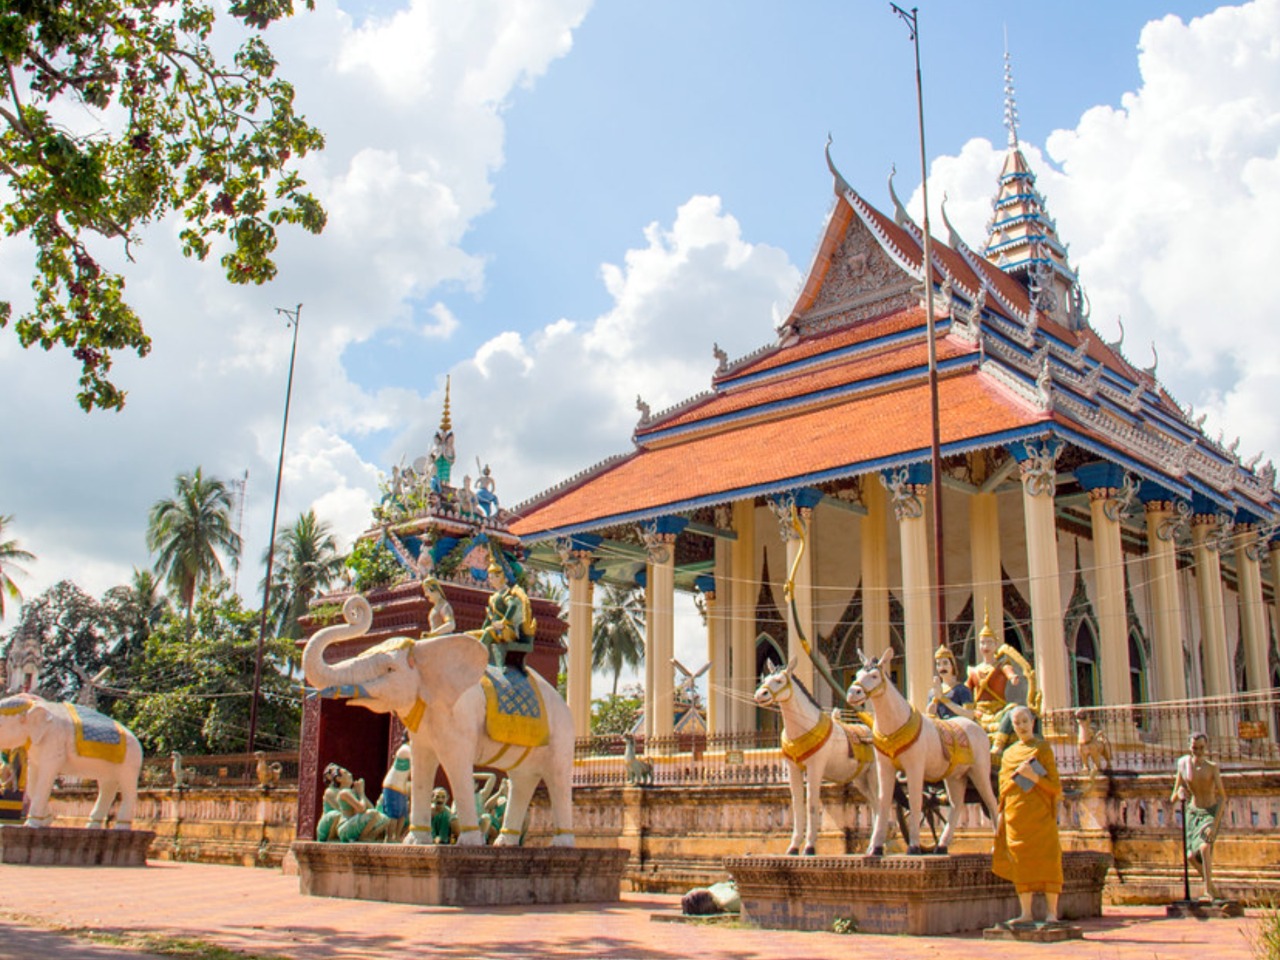 Баттамбанг — культурная и рисовая столица Камбоджи | Цена 230€, отзывы, описание экскурсии